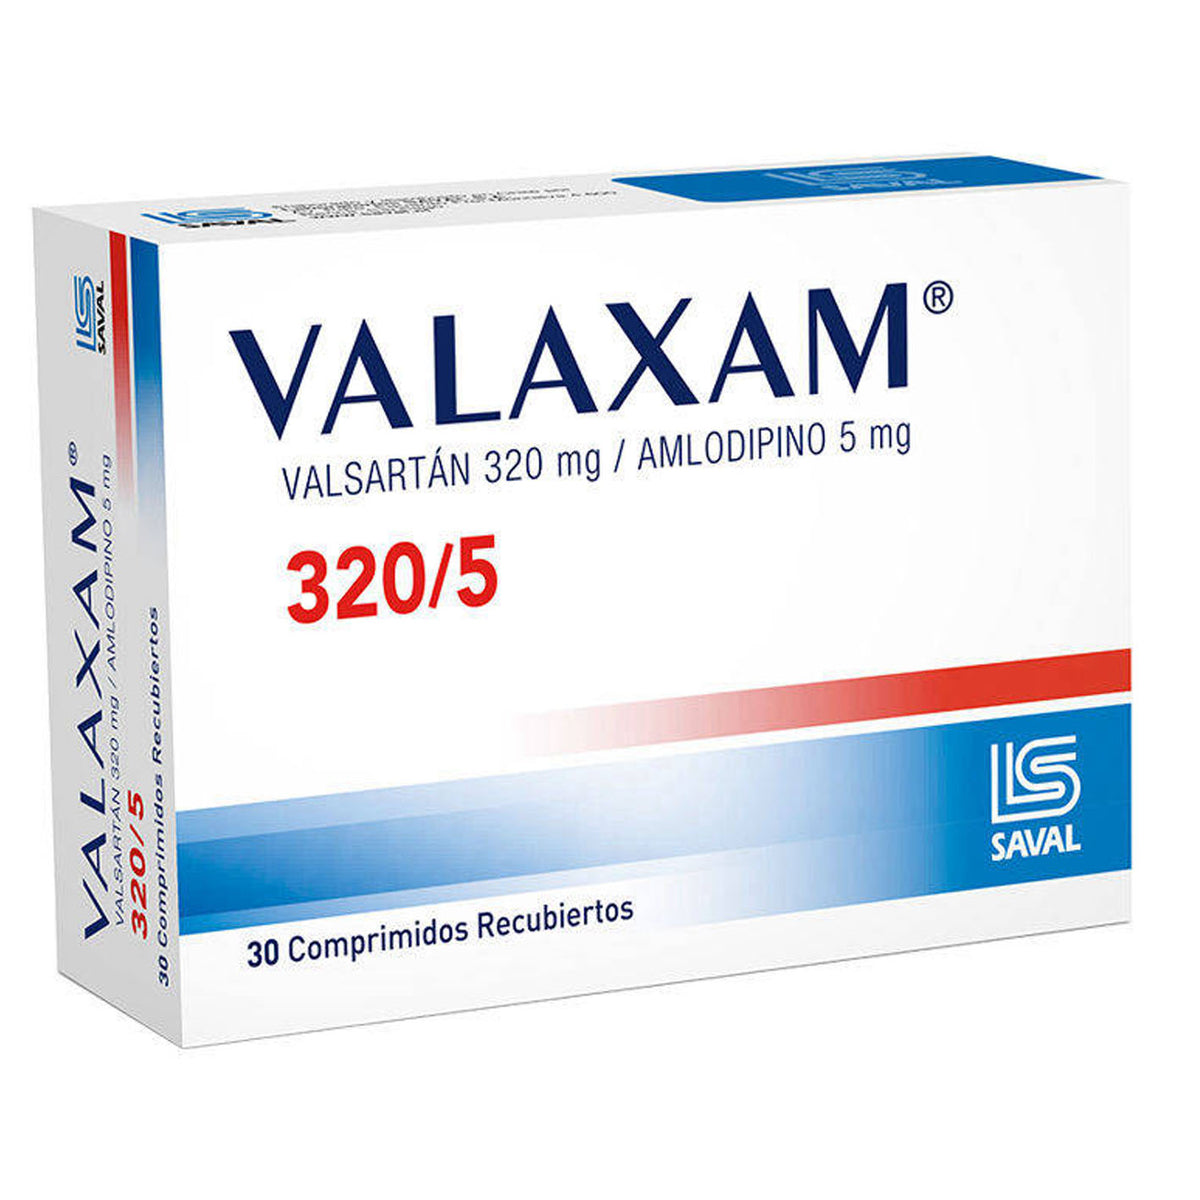 Valaxam Comprimidos Recubiertos 320/5